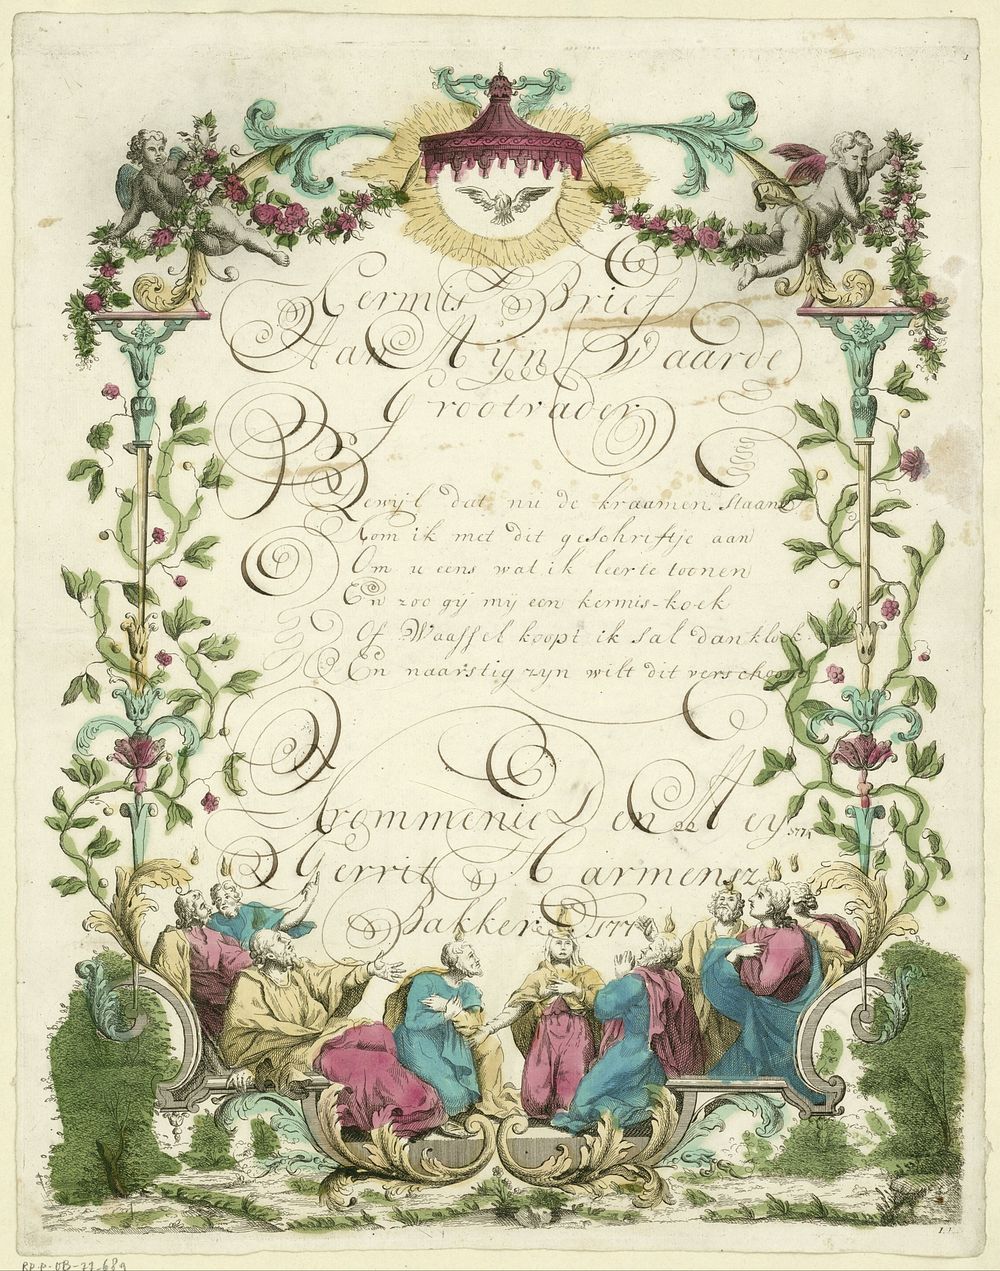 Wensbrief met de neerdaling van de Heilige Geest (1774) by Monogrammist IFL and anonymous